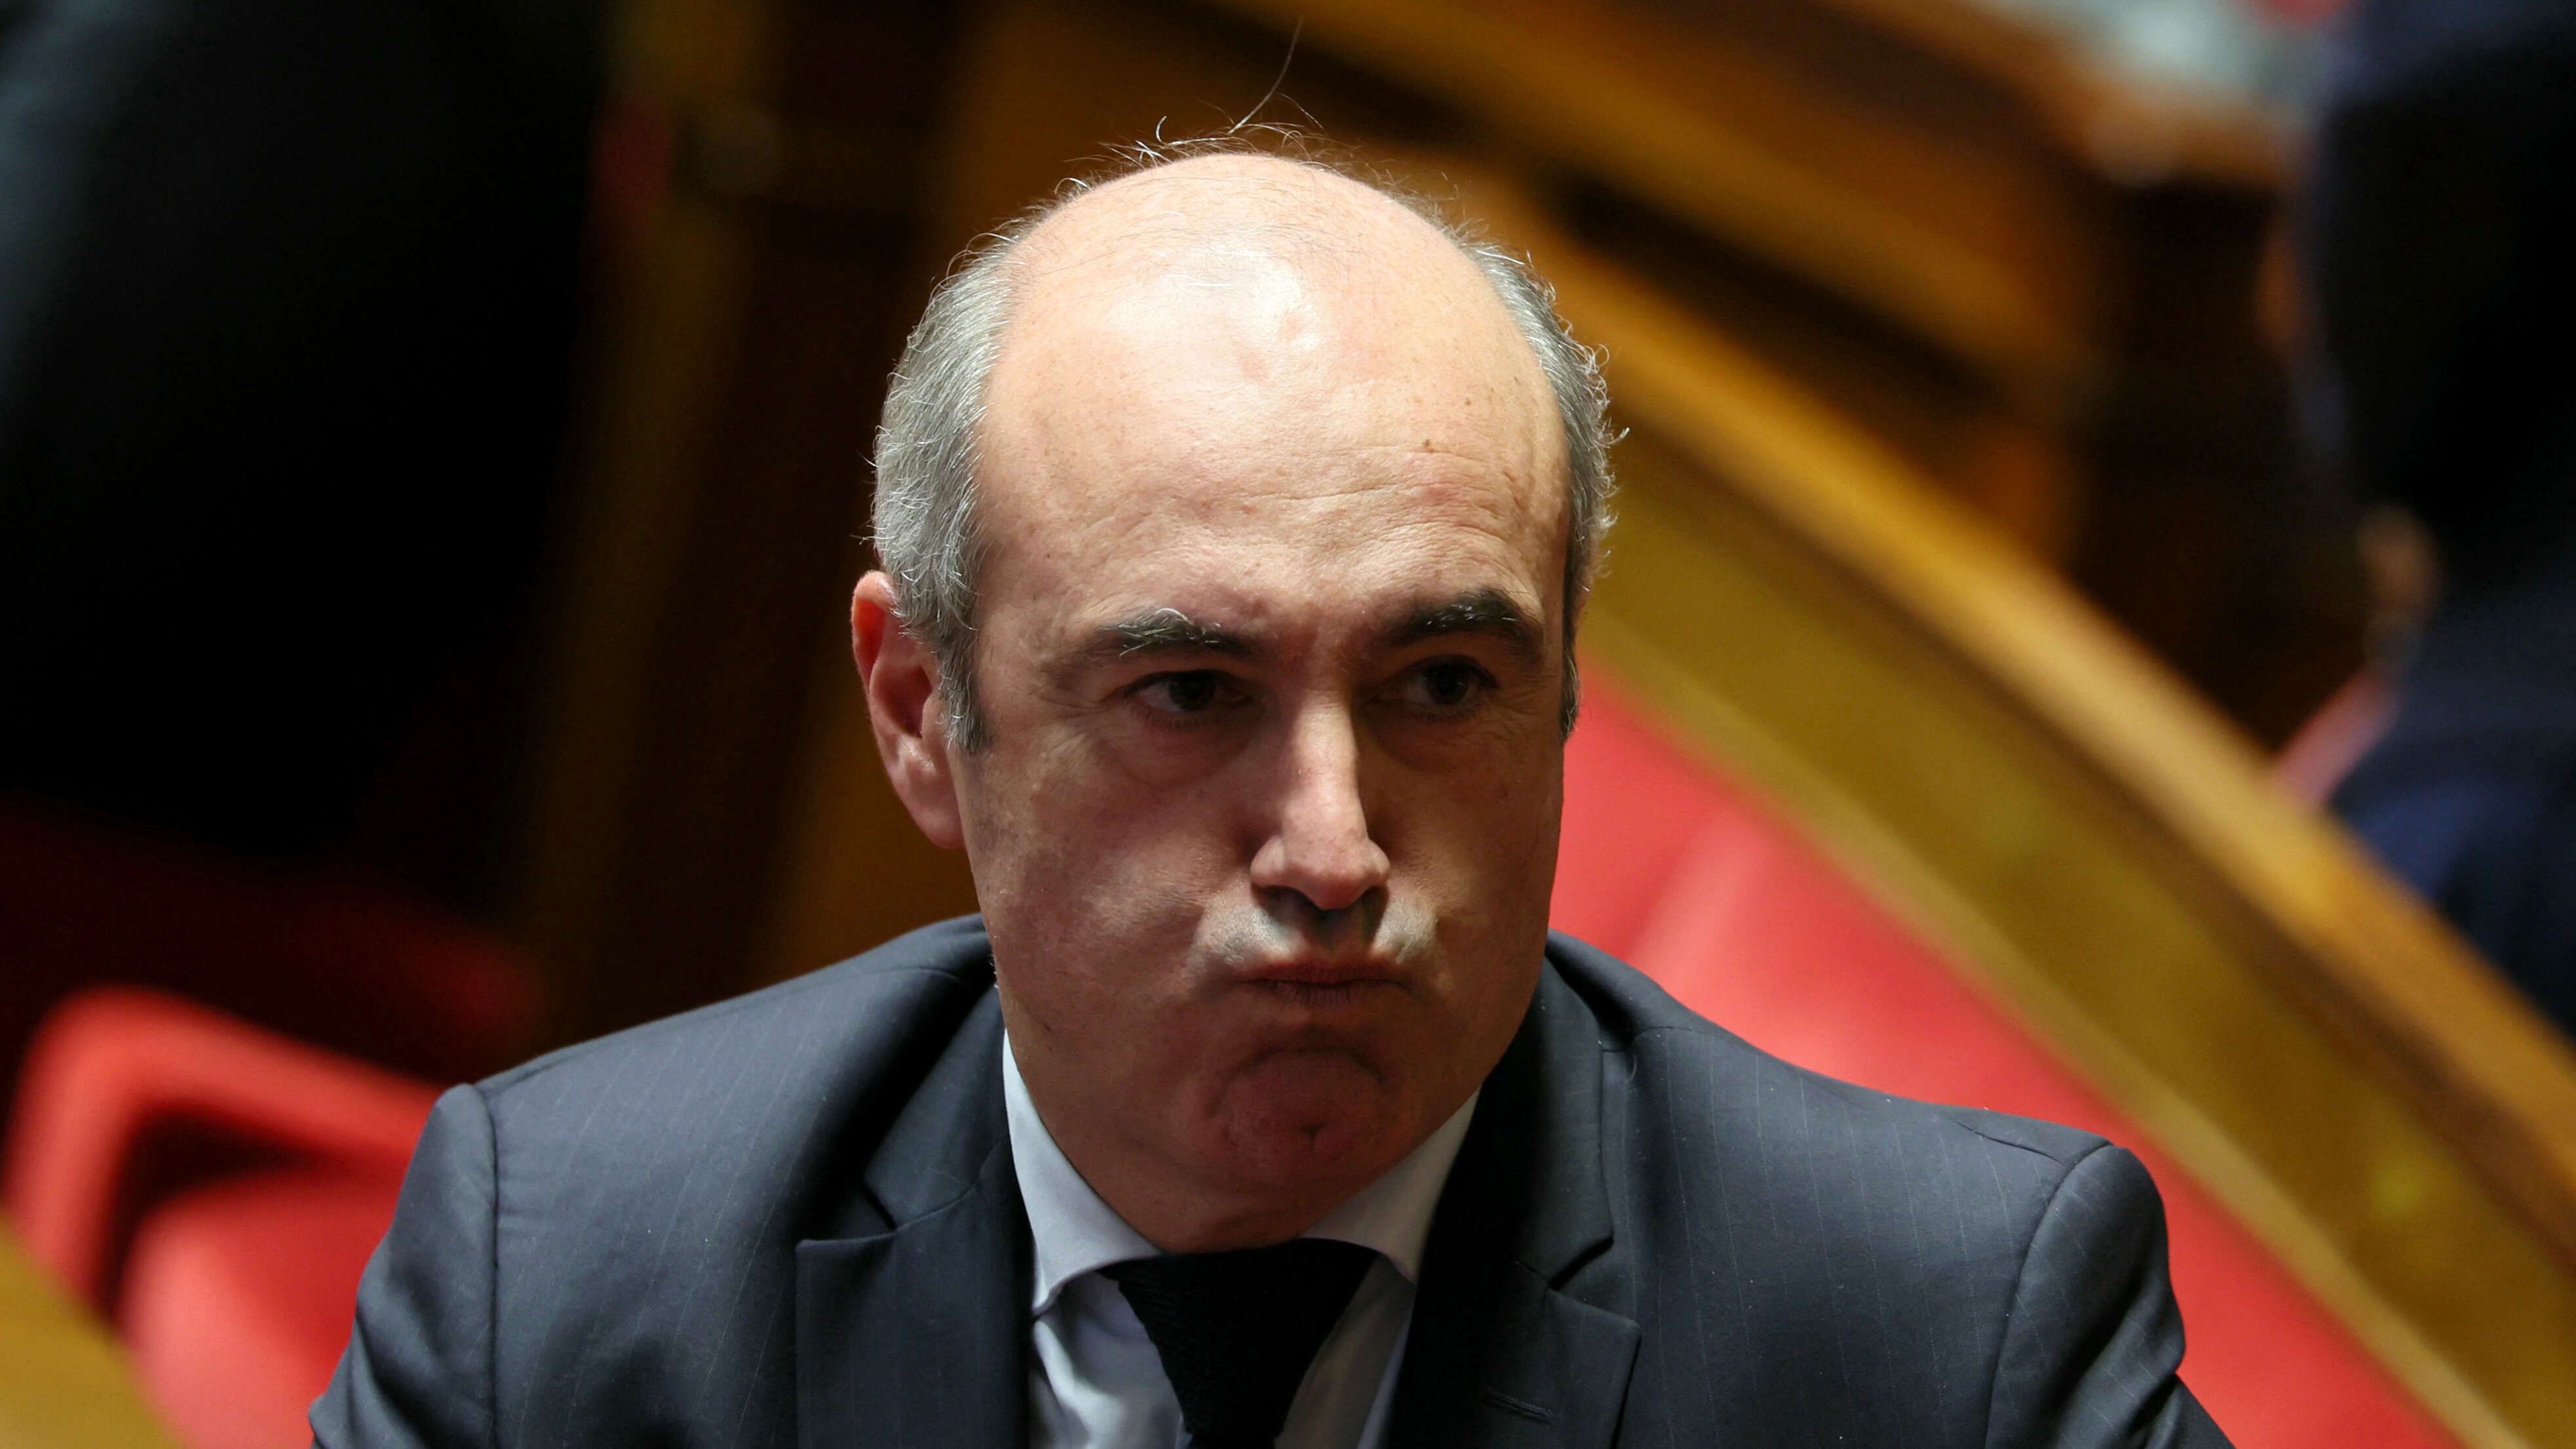 Déficit public : la drôle d’idée d’Olivier Marleix pour se débarrasser de Bruno Le Maire